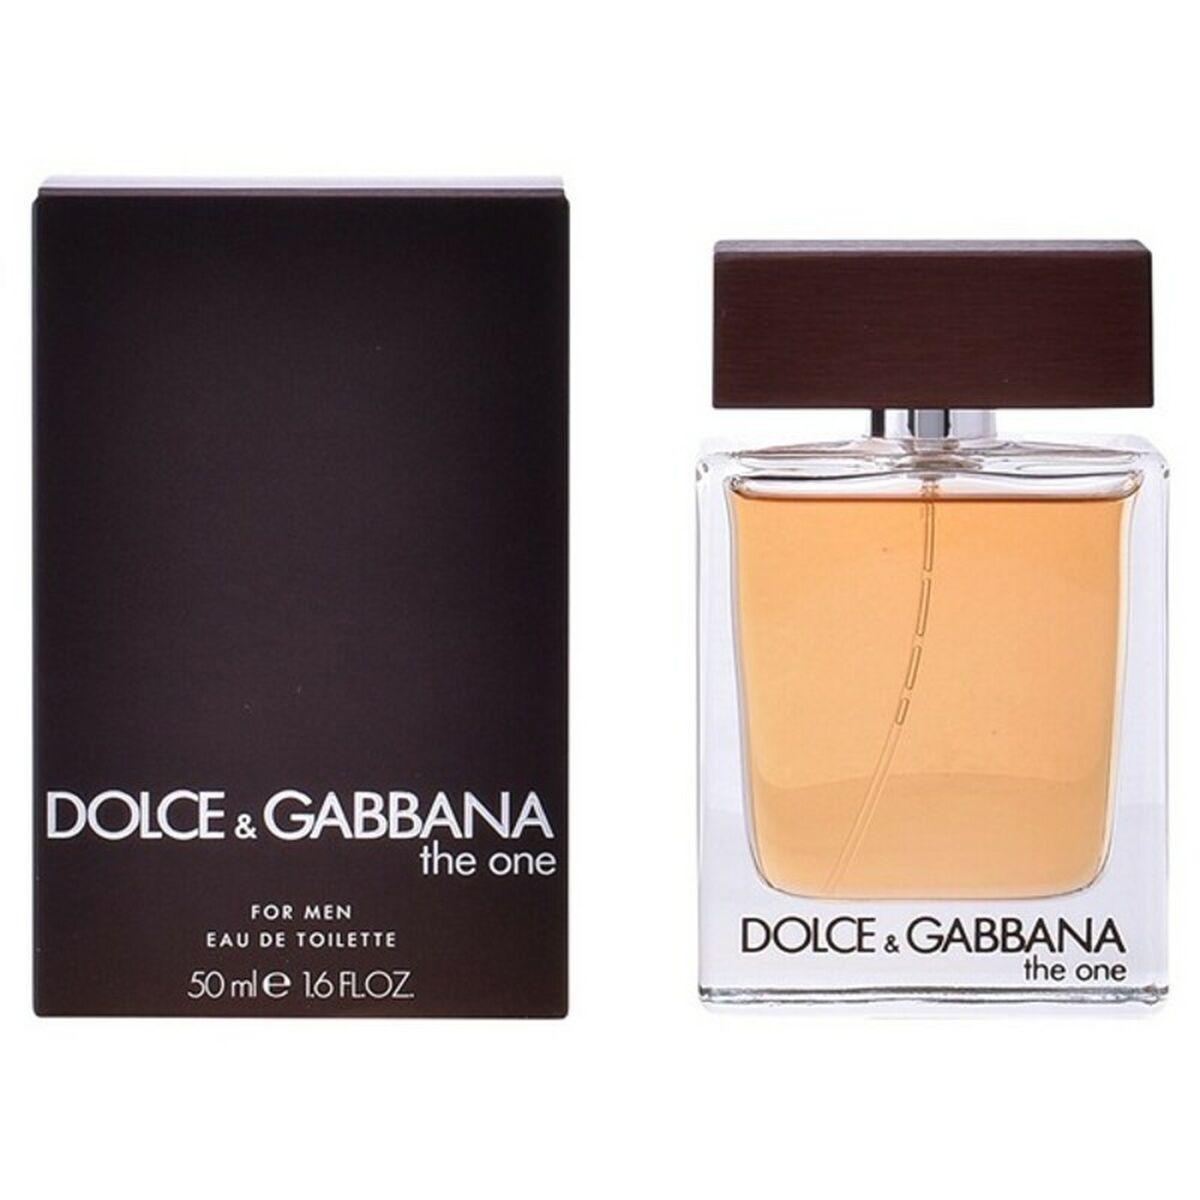 Herenparfum Dolce & Gabbana EDT